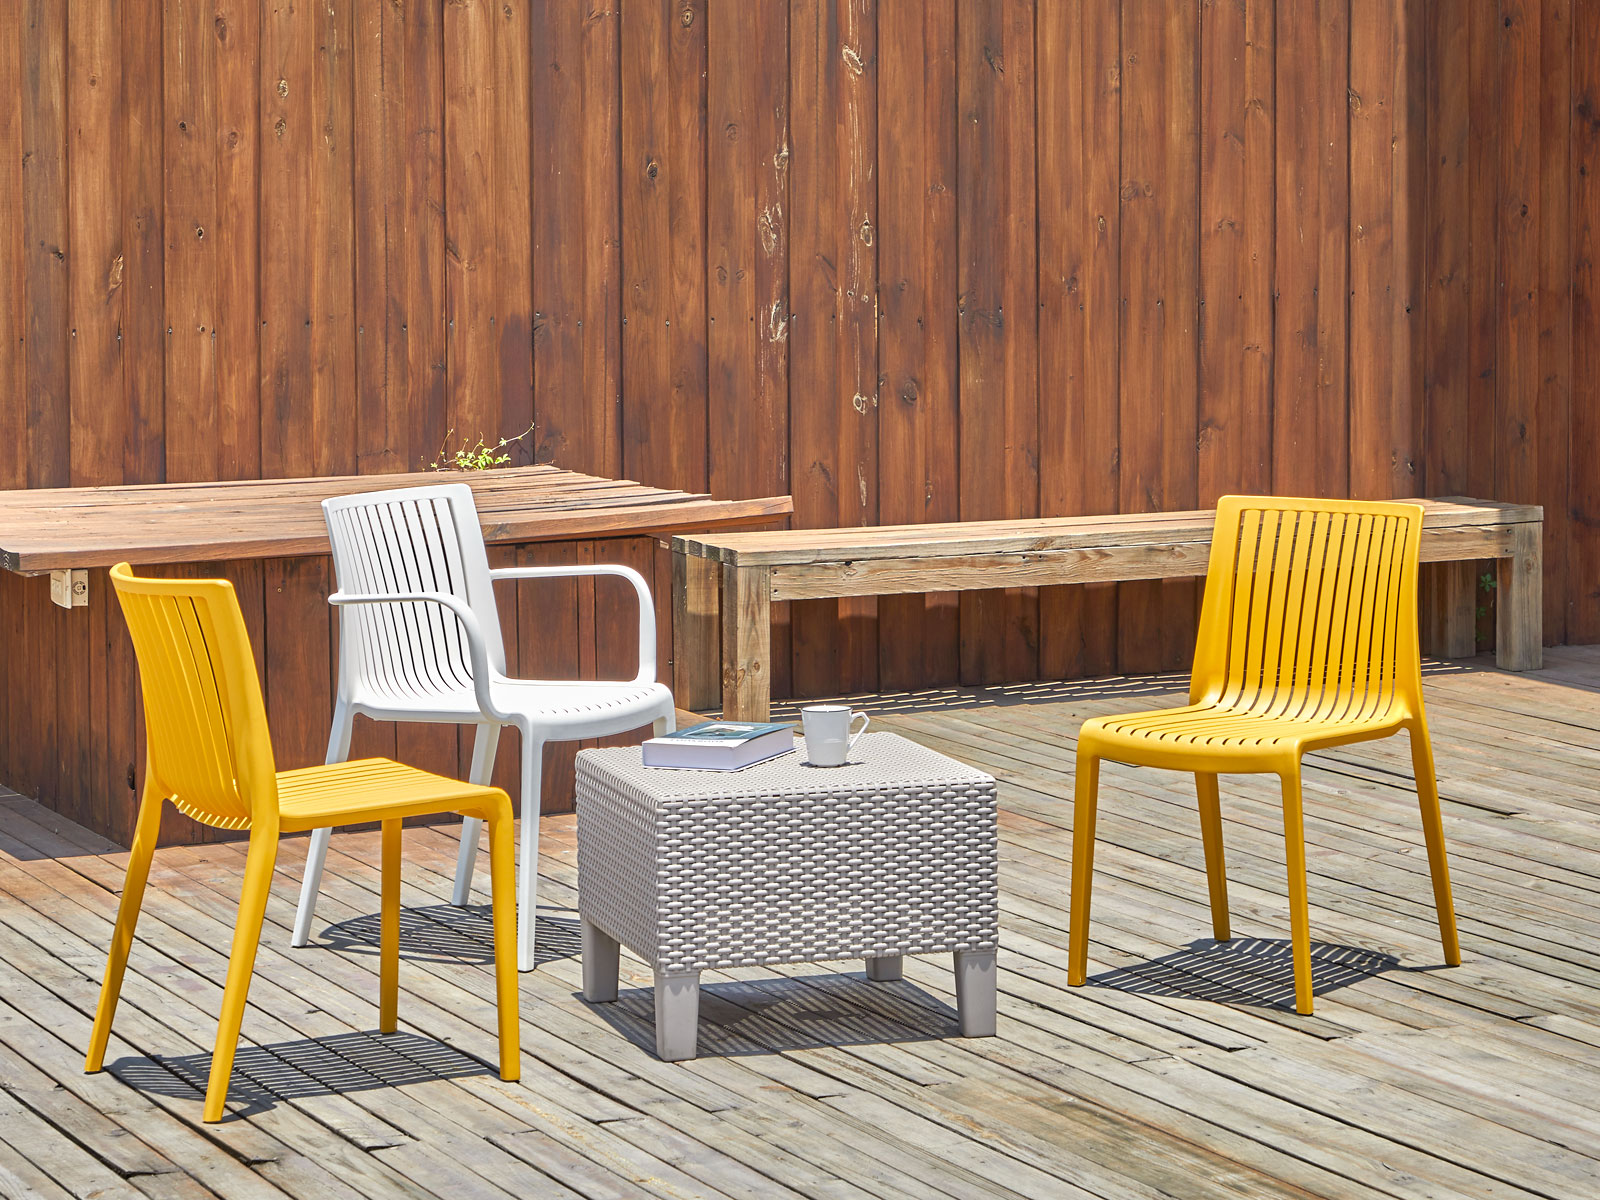 7203B-PT2 Milos米洛斯餐椅 - Lagoon 創意家具&生活家電 戶外家具的專家，顏色繽紛富設計感 室內/戶外都適合使用。